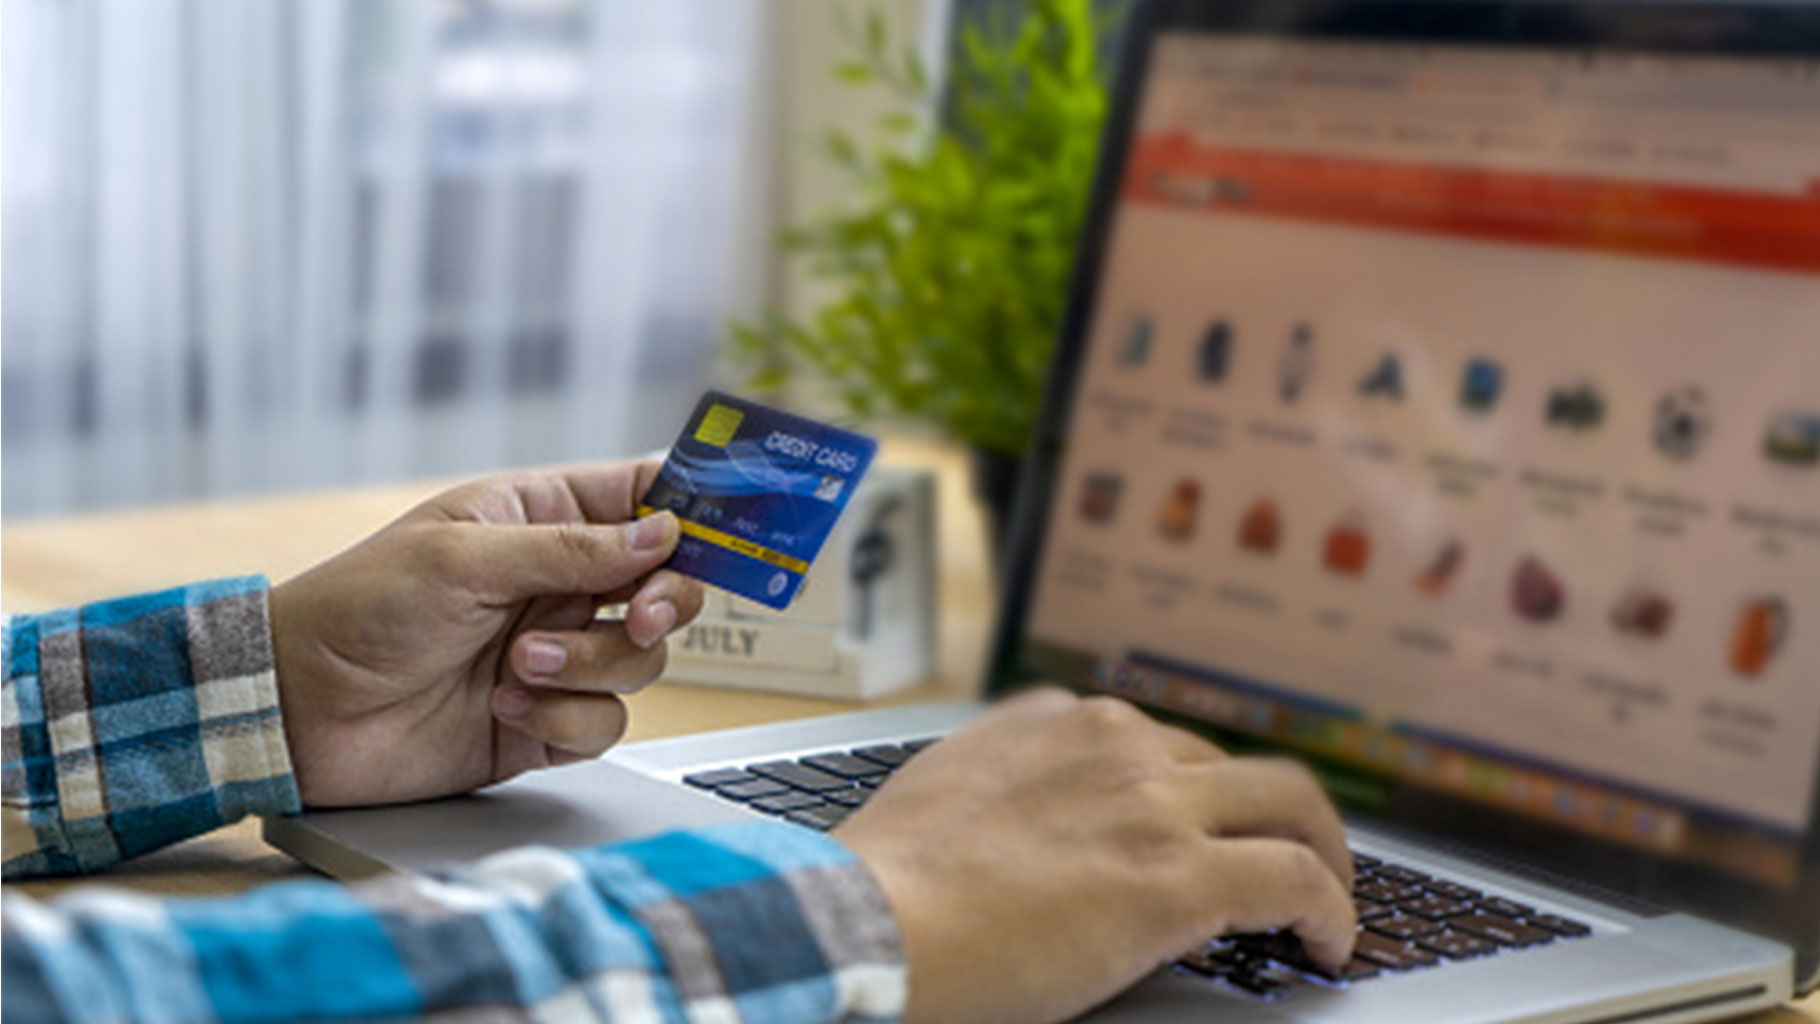 1 अक्टूबर से नया क्रेडिट, डेबिट कार्ड सुरक्षा नियम: यहां बताया गया है कि अपने कार्ड को 'Tokenised' कैसे प्राप्त करें.